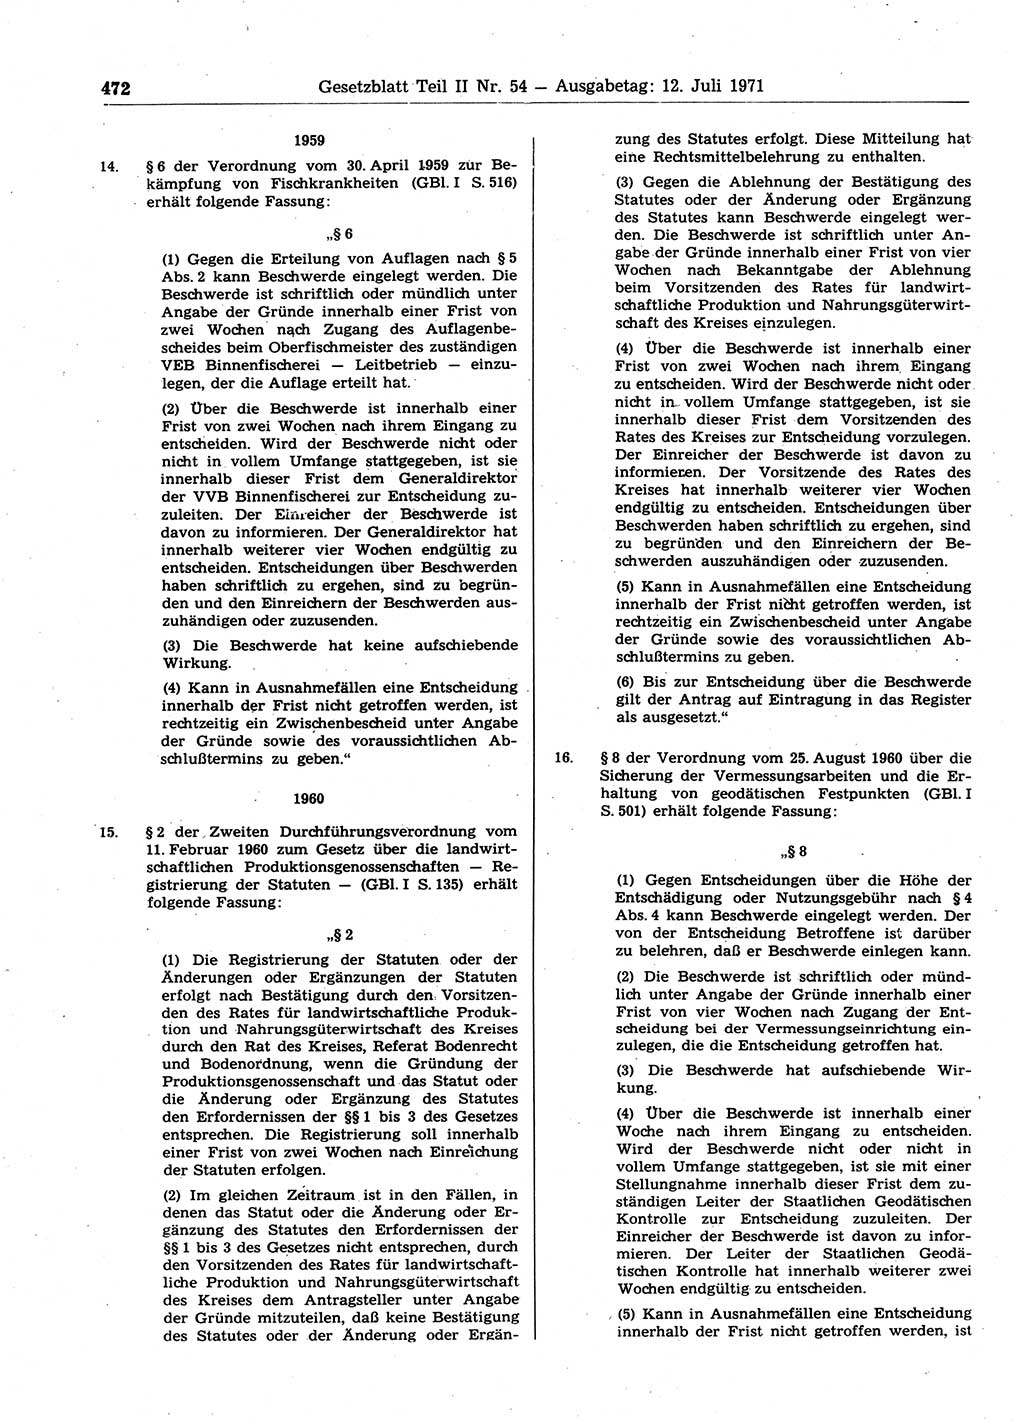 Gesetzblatt (GBl.) der Deutschen Demokratischen Republik (DDR) Teil ⅠⅠ 1971, Seite 472 (GBl. DDR ⅠⅠ 1971, S. 472)